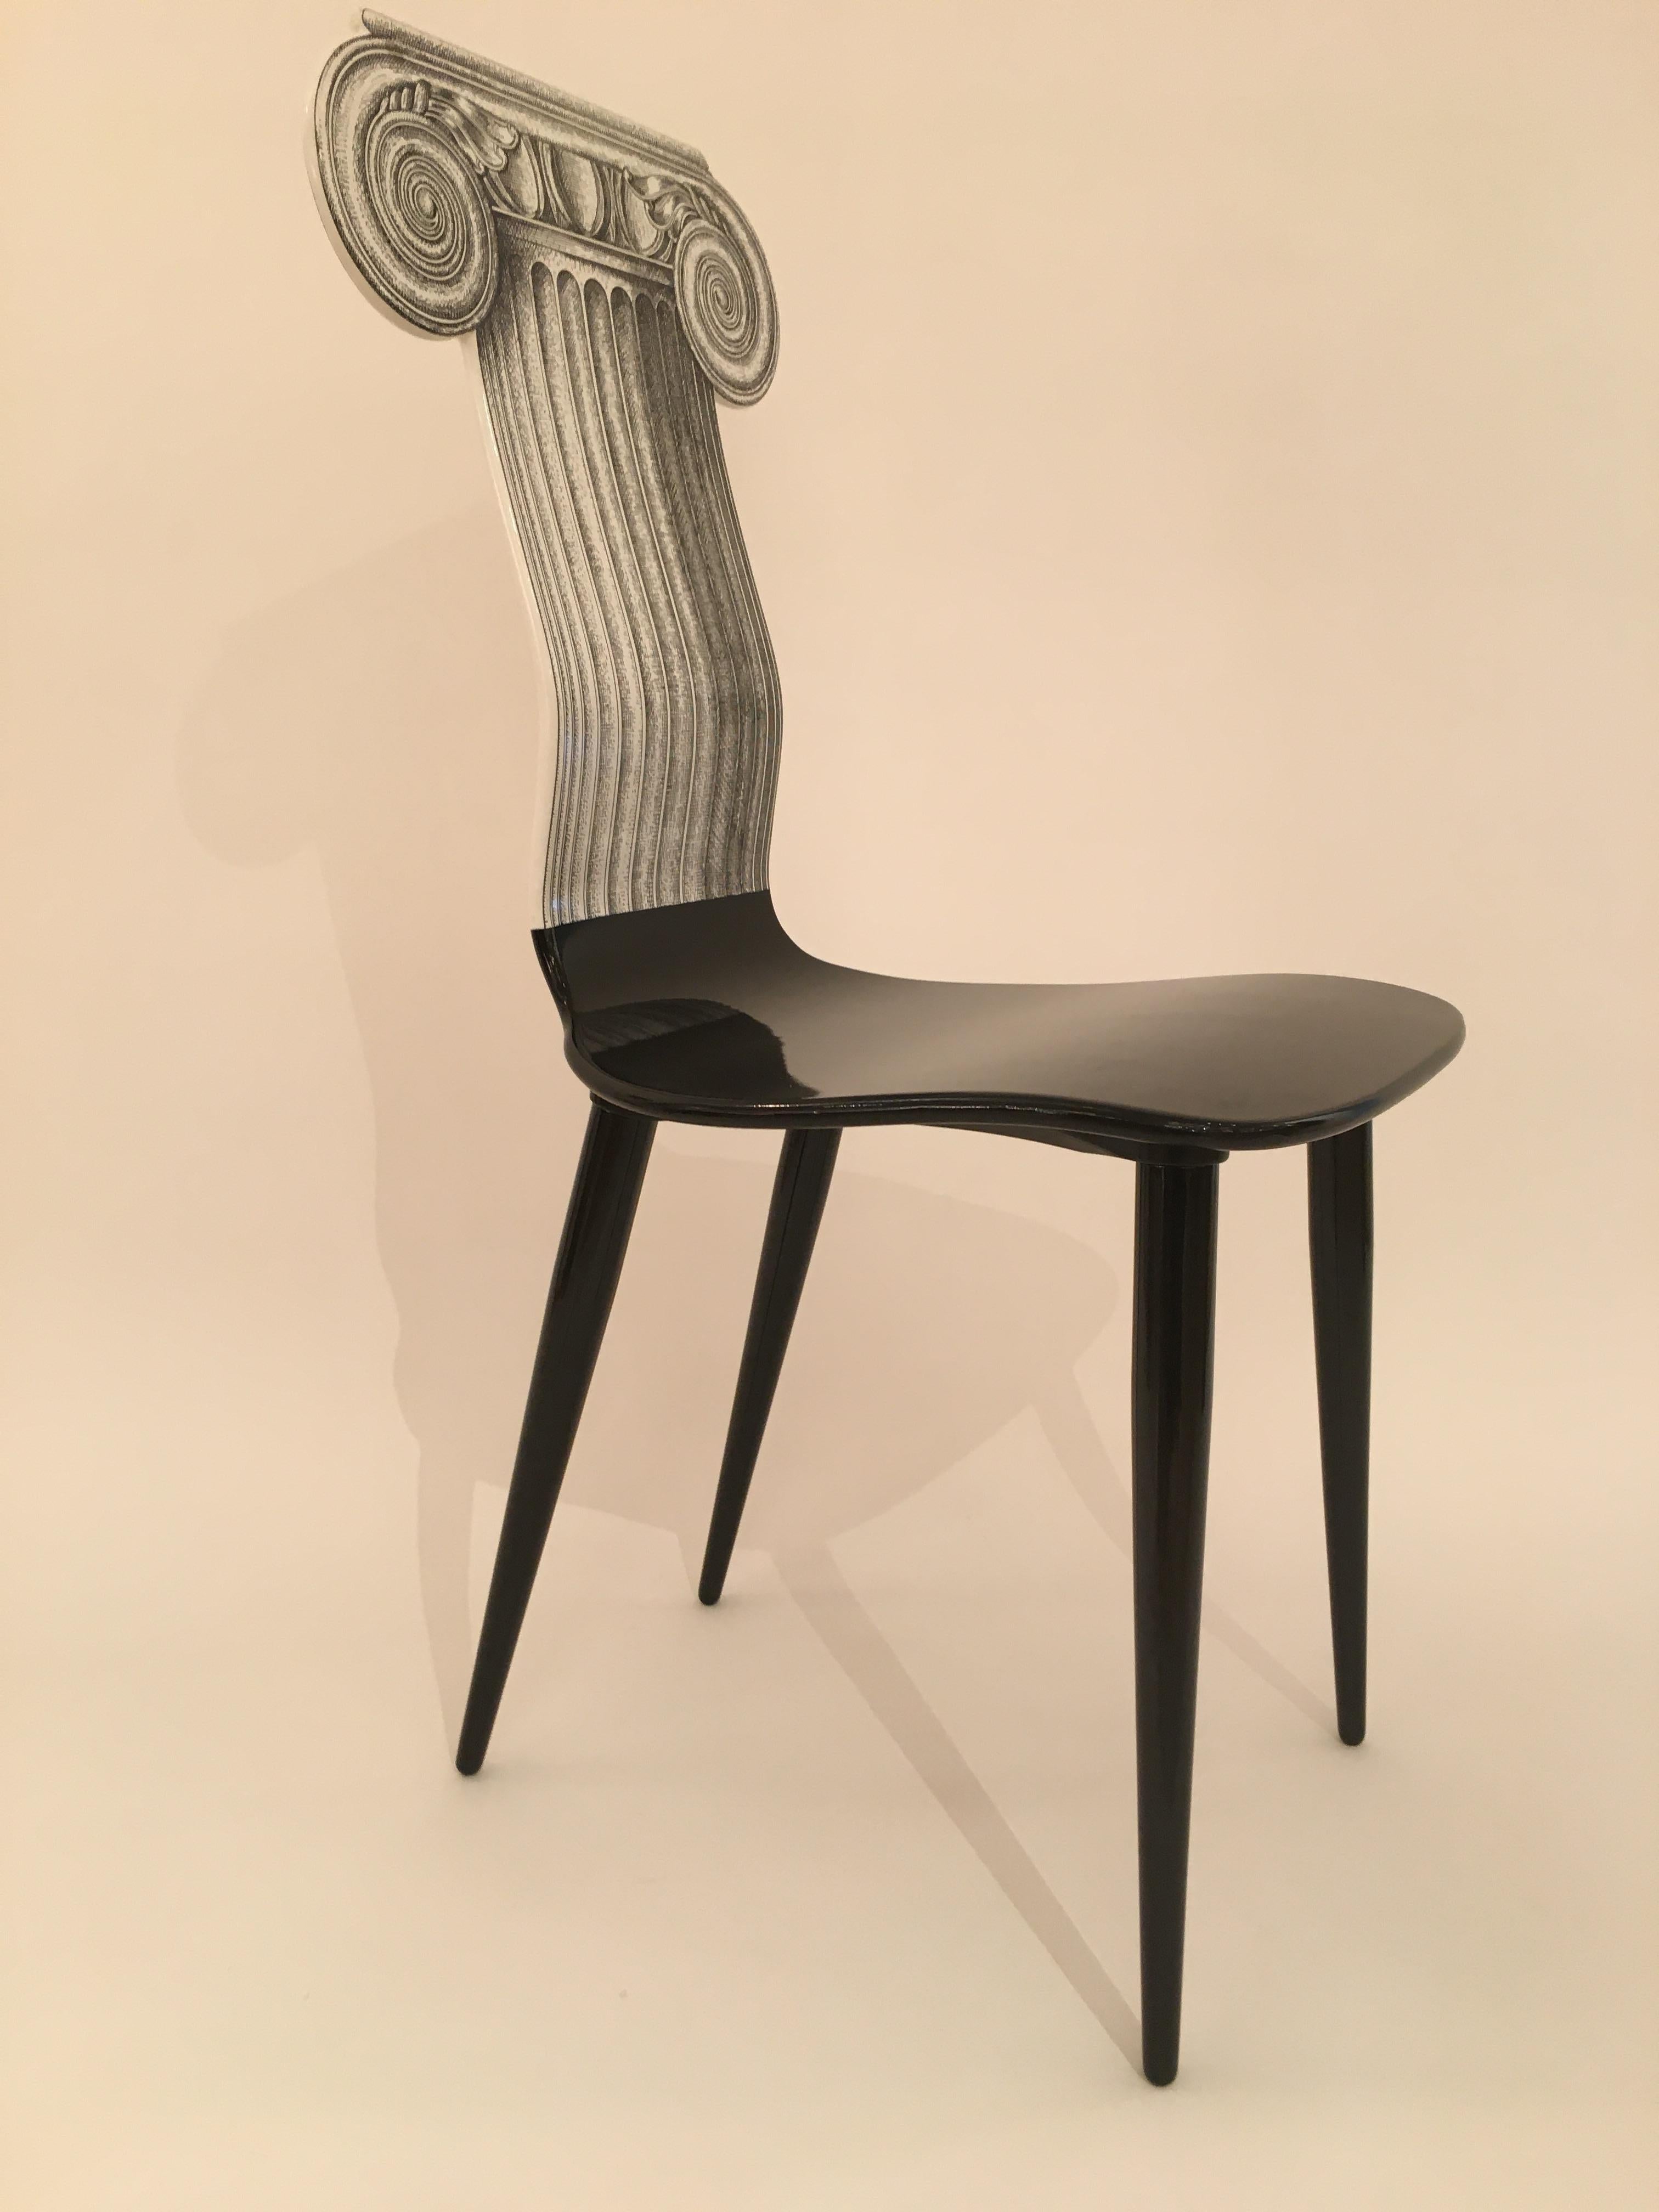 Piero Fornasetti 'Capitello Ionico' Chair in Black and White, Italy, circa 2006 For Sale 1